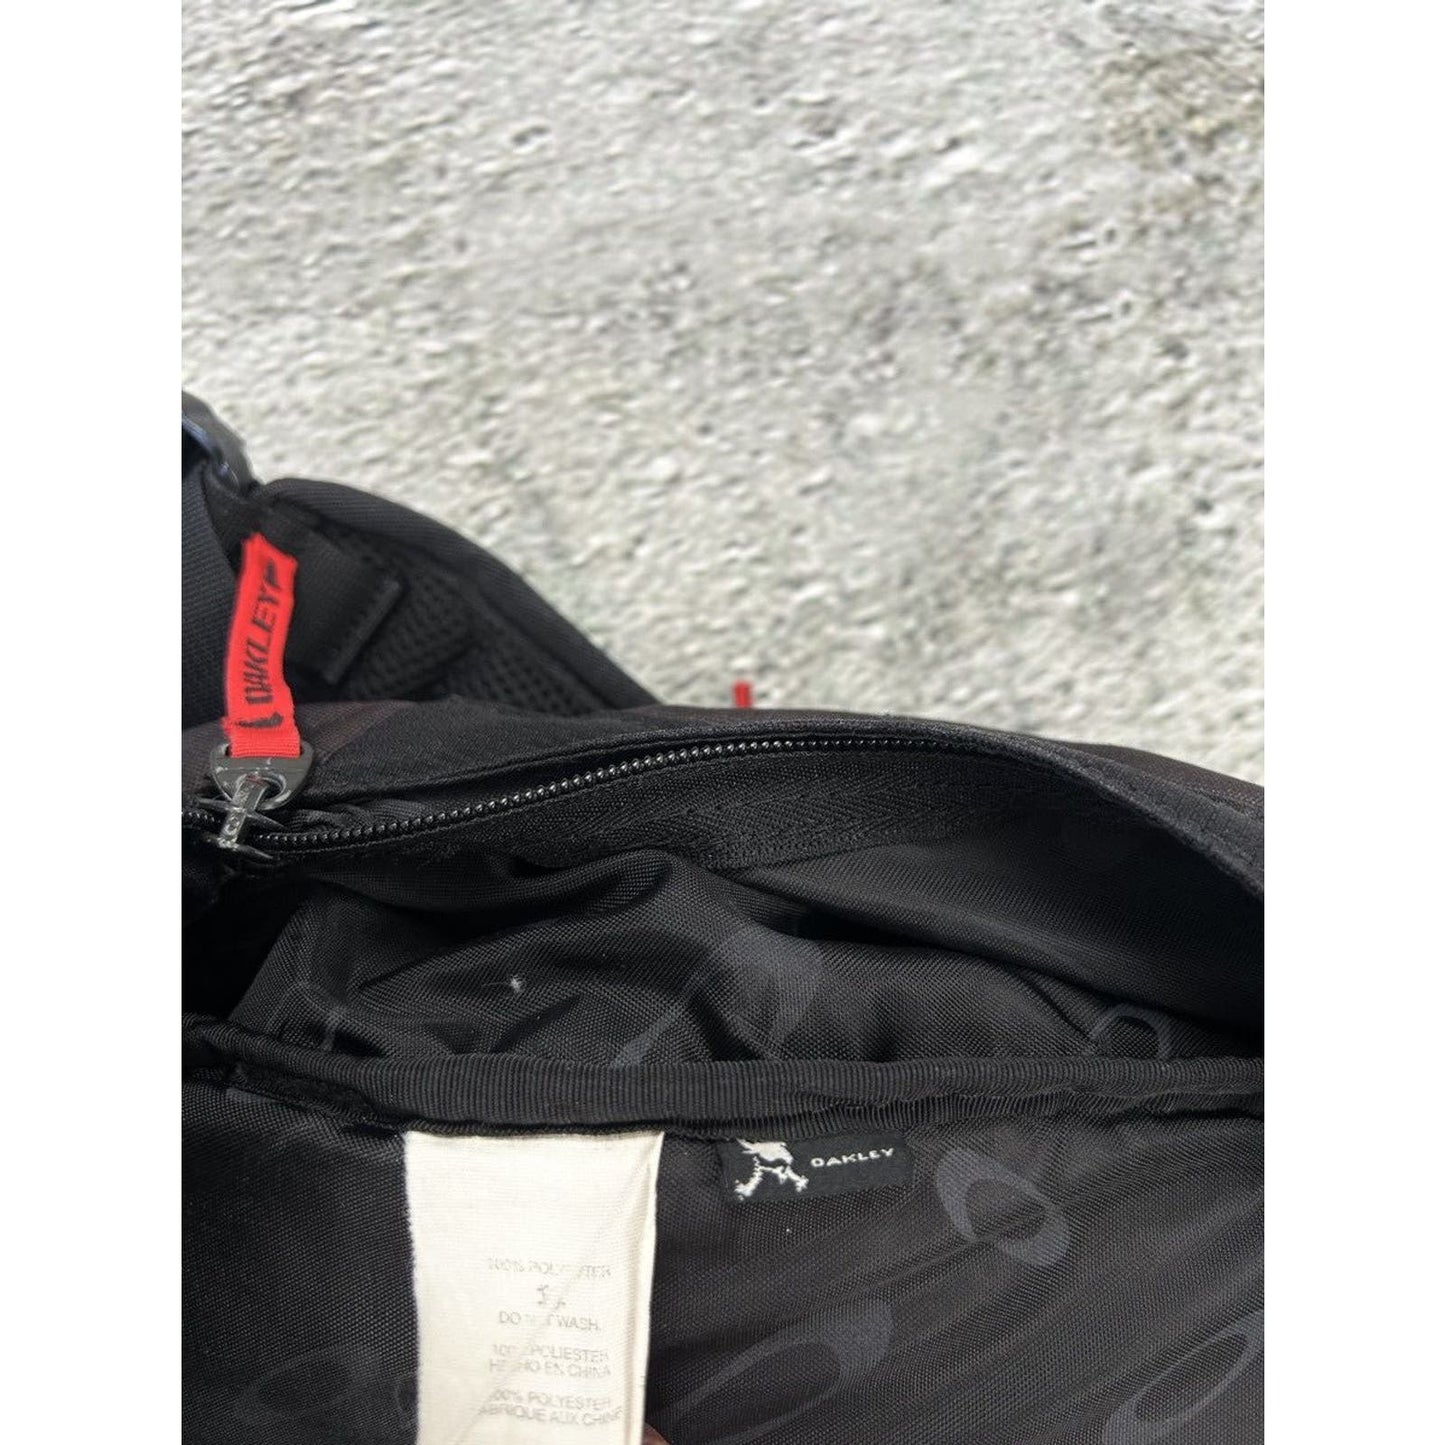 Oakley fifty-pack backpack black red Y2K tactical vintage